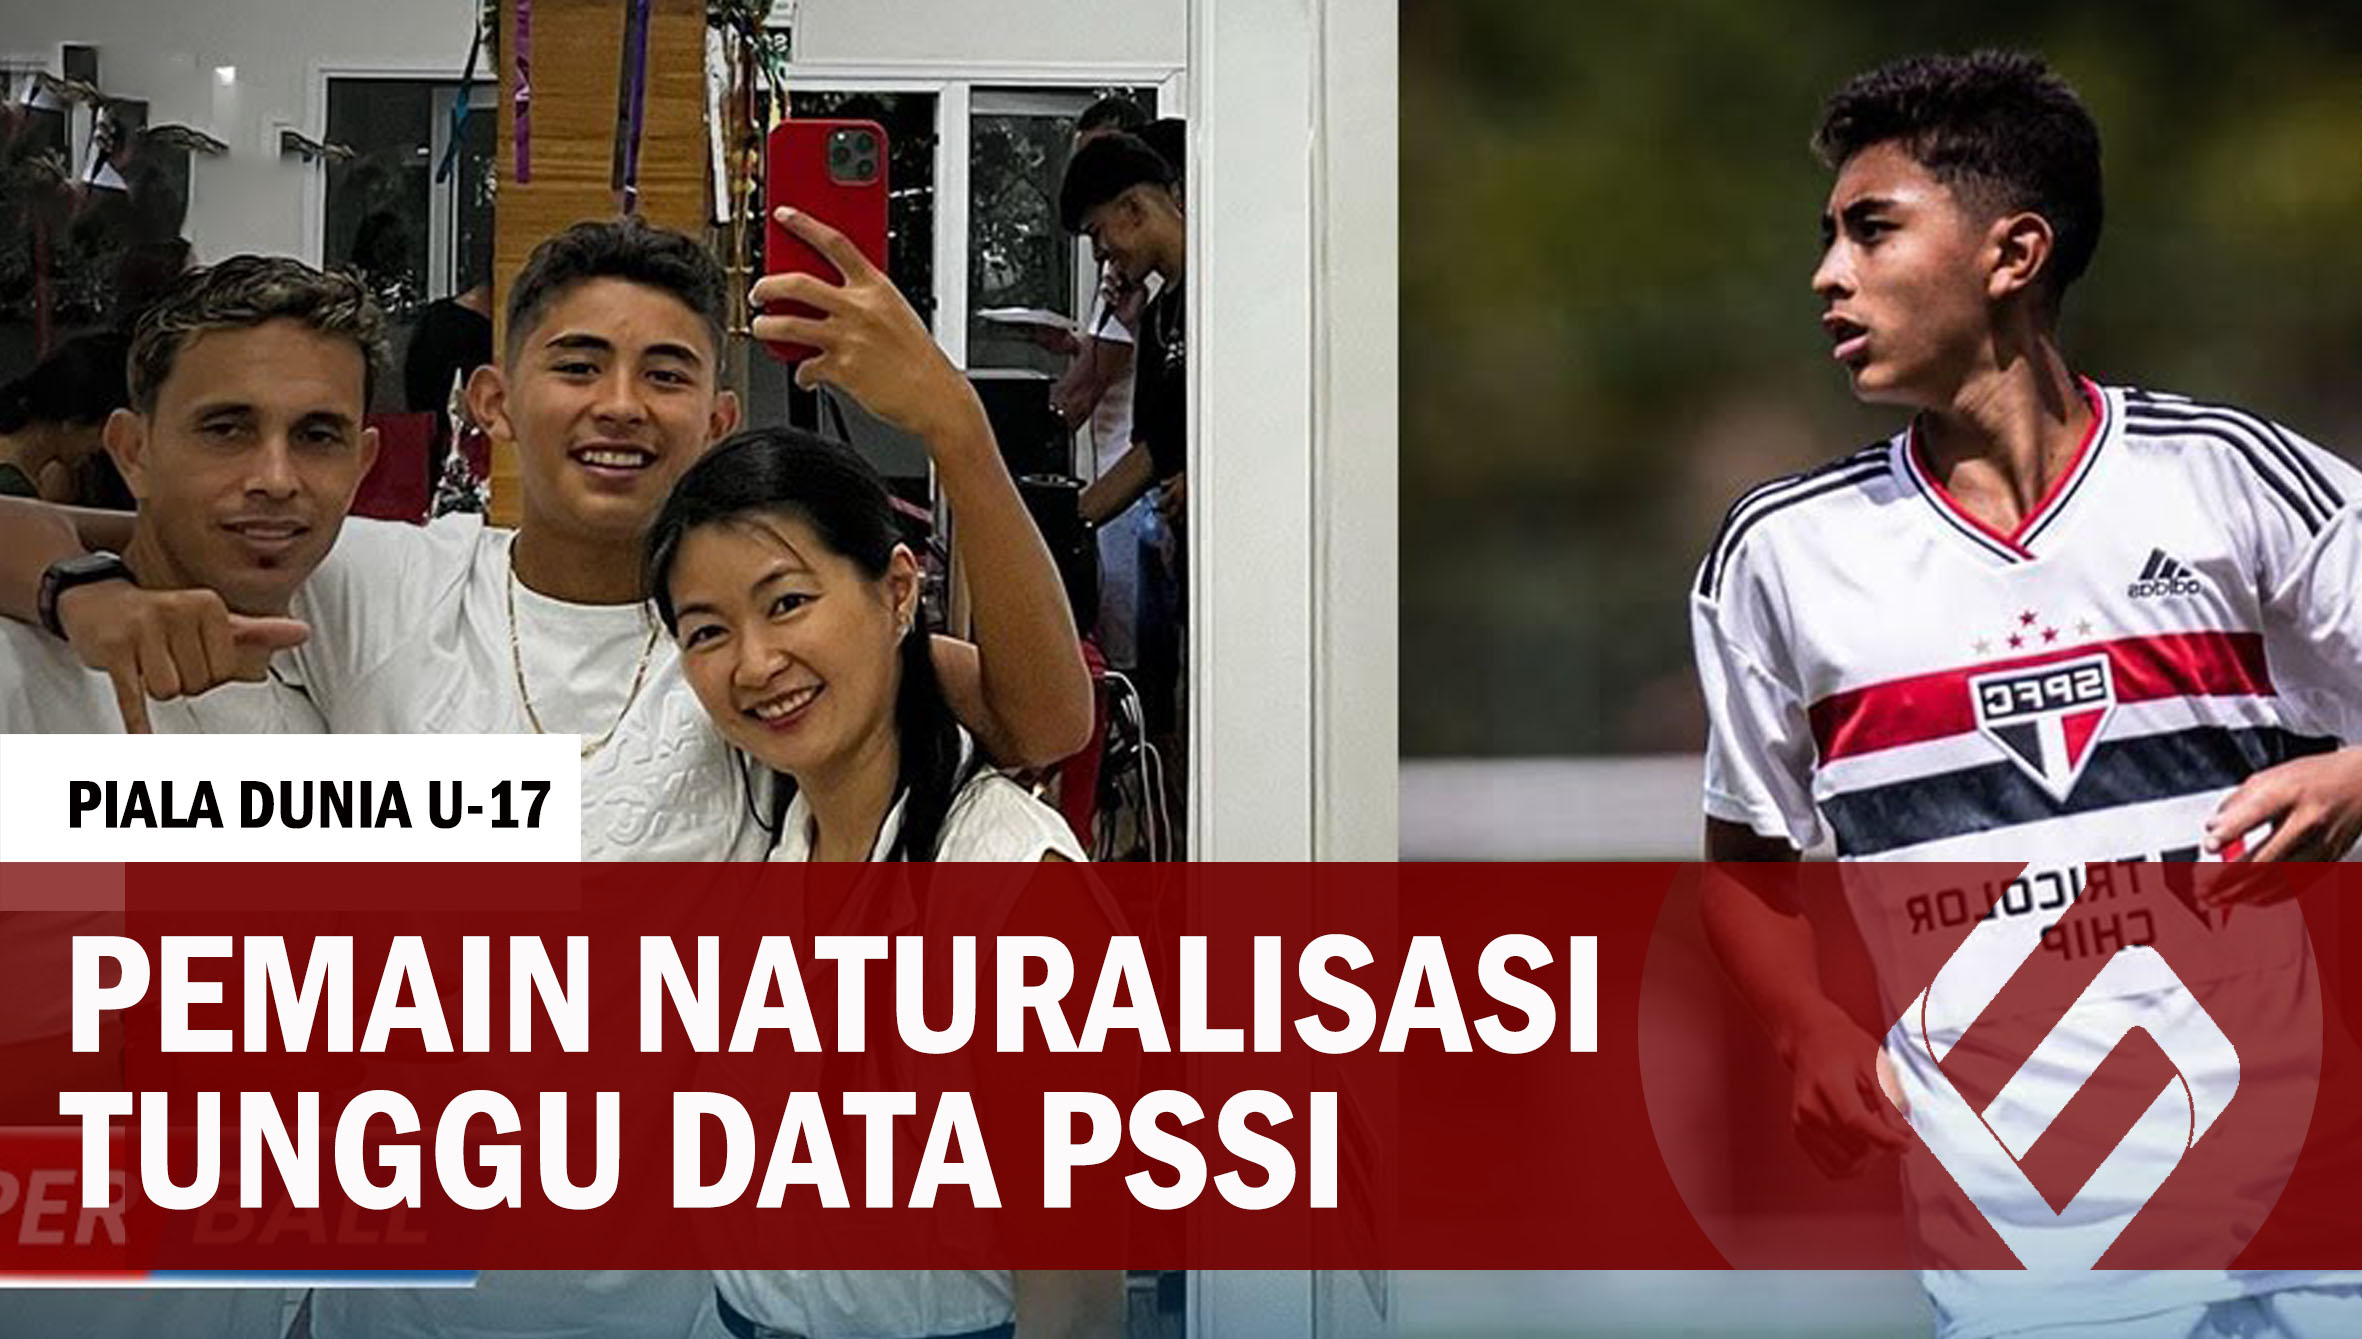 SABAR, SOAL PEMAIN NATURALISASI UNTUK TIMNAS U-17 INDONESIA TUNGGU DATA DARI PSSI